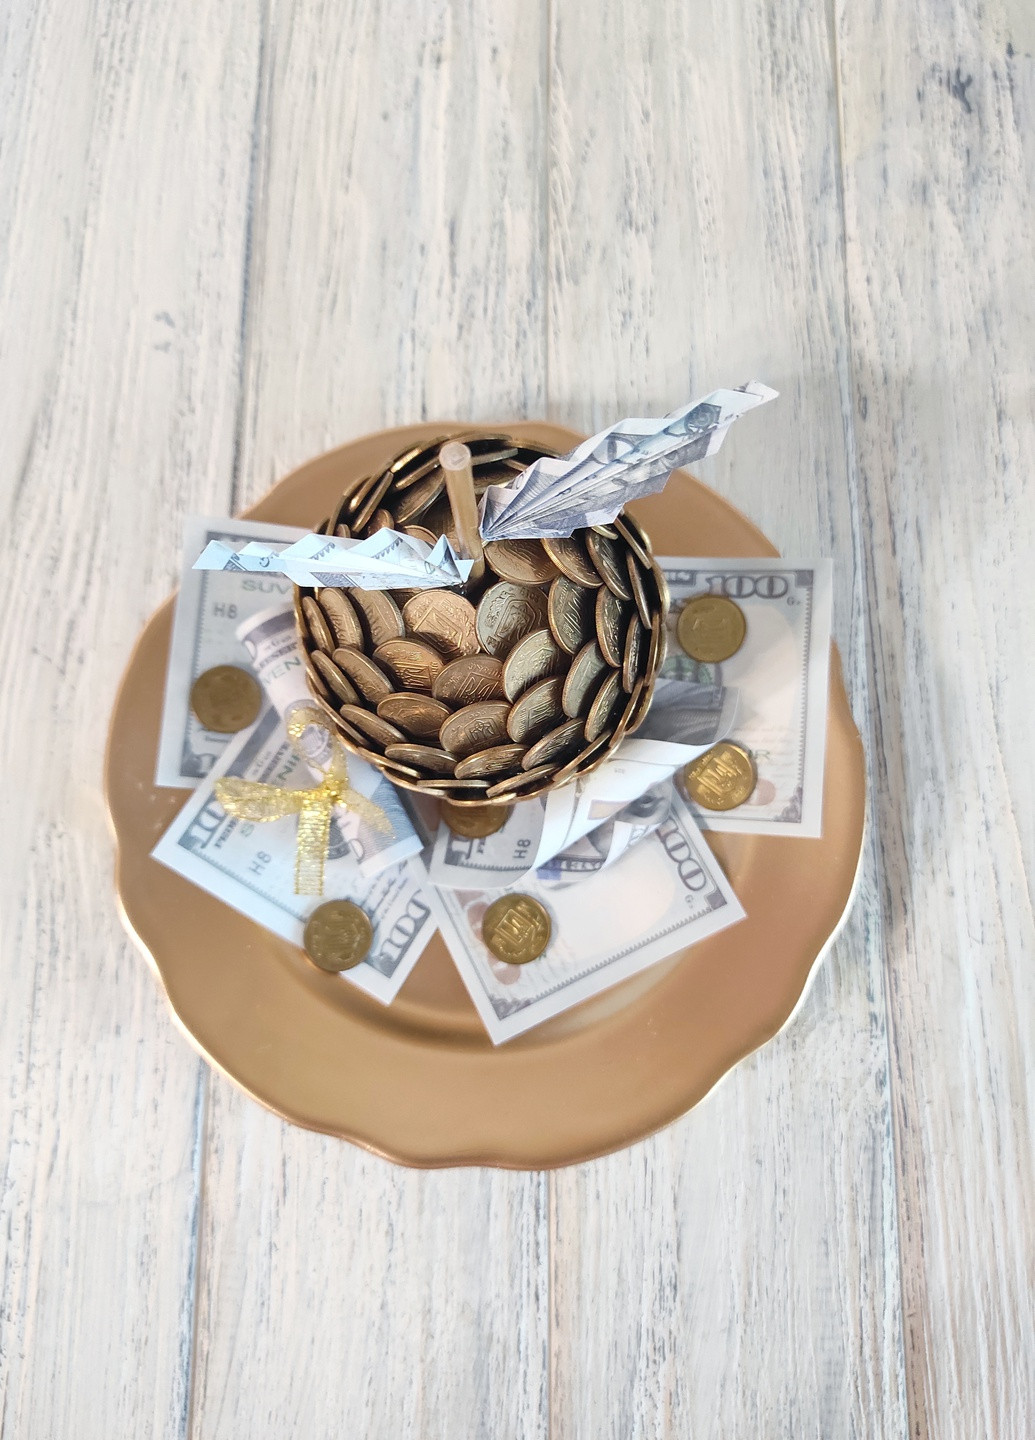 Сувенир статуэтка Яблоко с монетами на золотой тарелке с долларами мал ручная работа хенд мейд подарок SuvenirPodarokZP 2 (258756219)